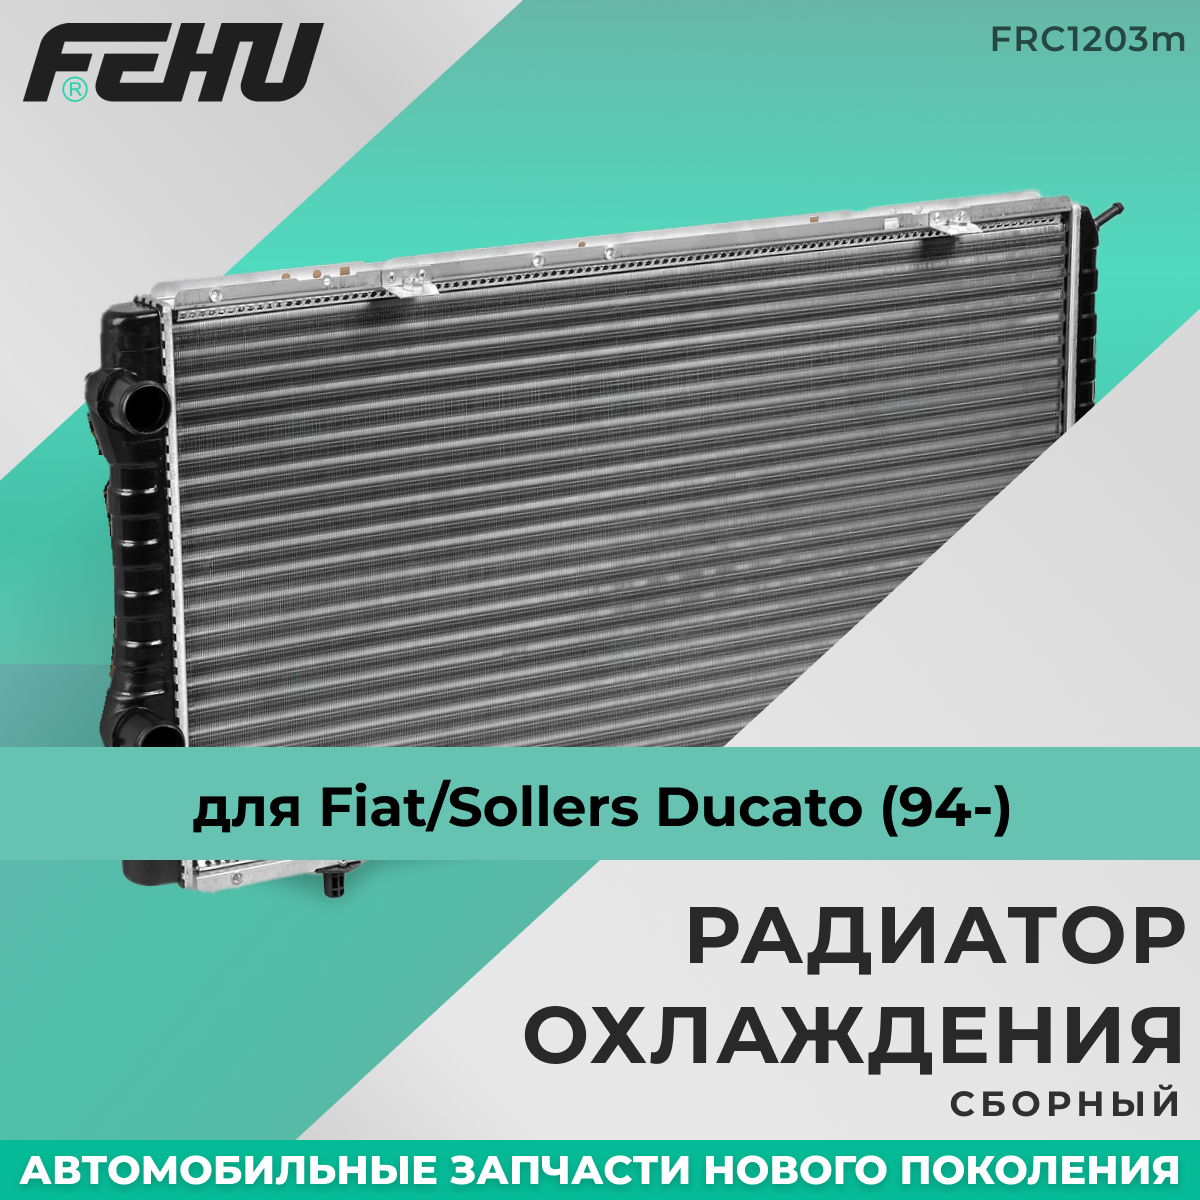 Радиатор охлаждения FEHU (феху) сборный Fiat Ducato/PSA Boxer/Jumper /Фиат Дукато(06-) арт. 1340359080; 1342588080; 1330. Q2; 1330. Q3; 1330. L2; 1330. W1; 1330. S9; 1331. RT; 1330. Z4